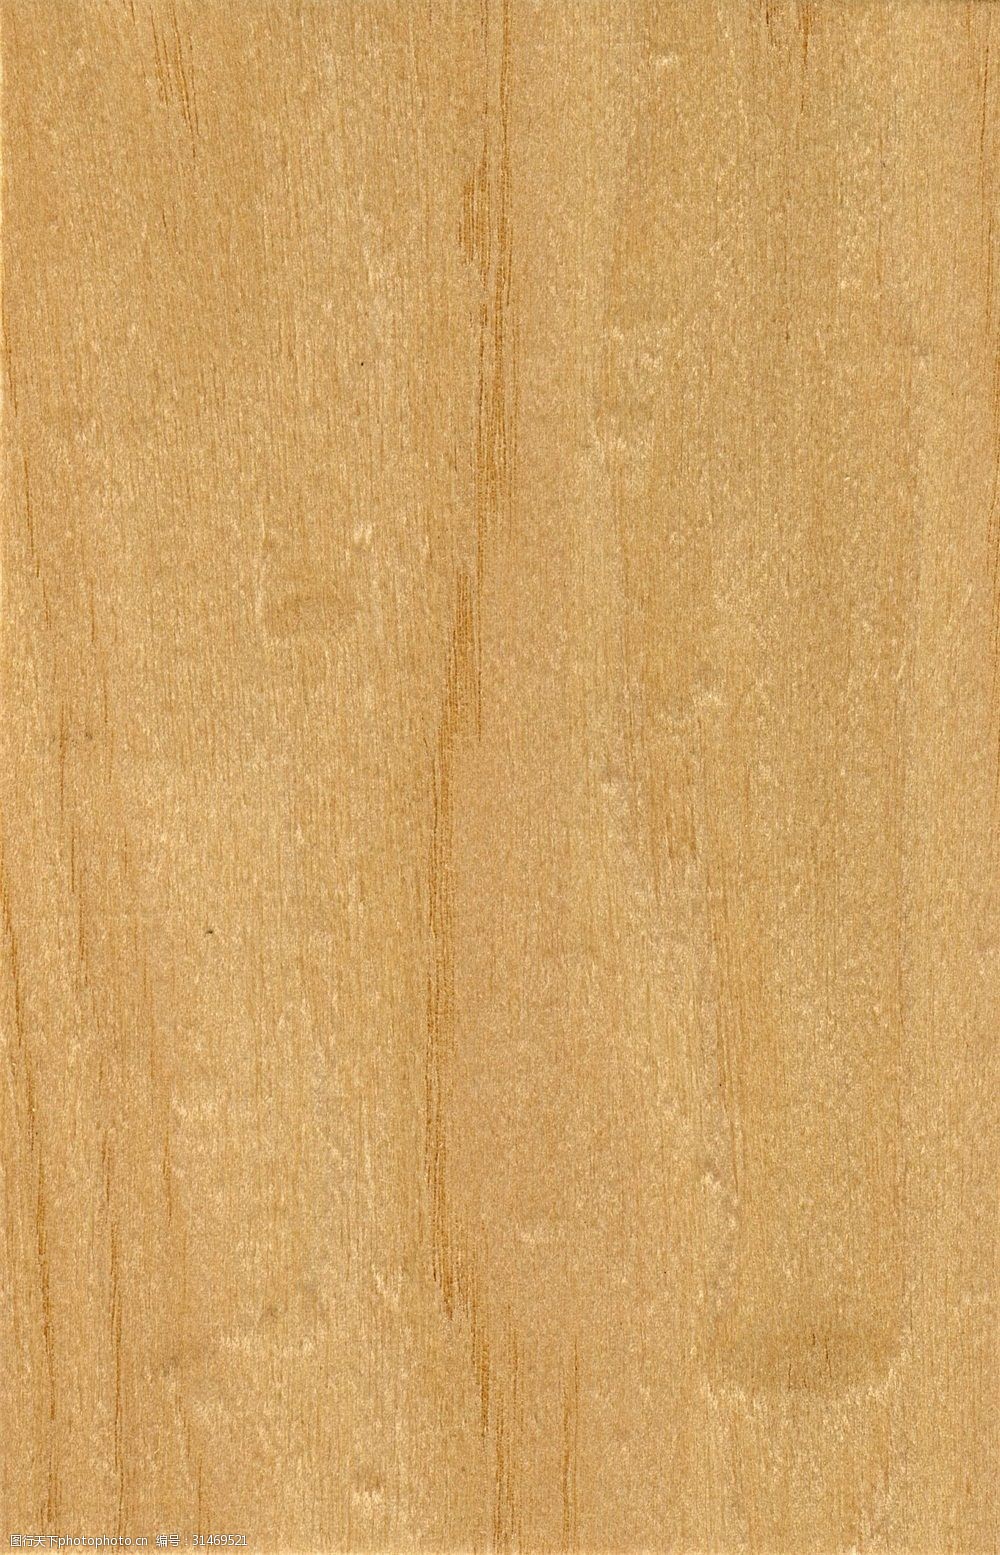 贴图木纹高清贴图图片下载木纹木地板材质贴图设计图片面板全套木材